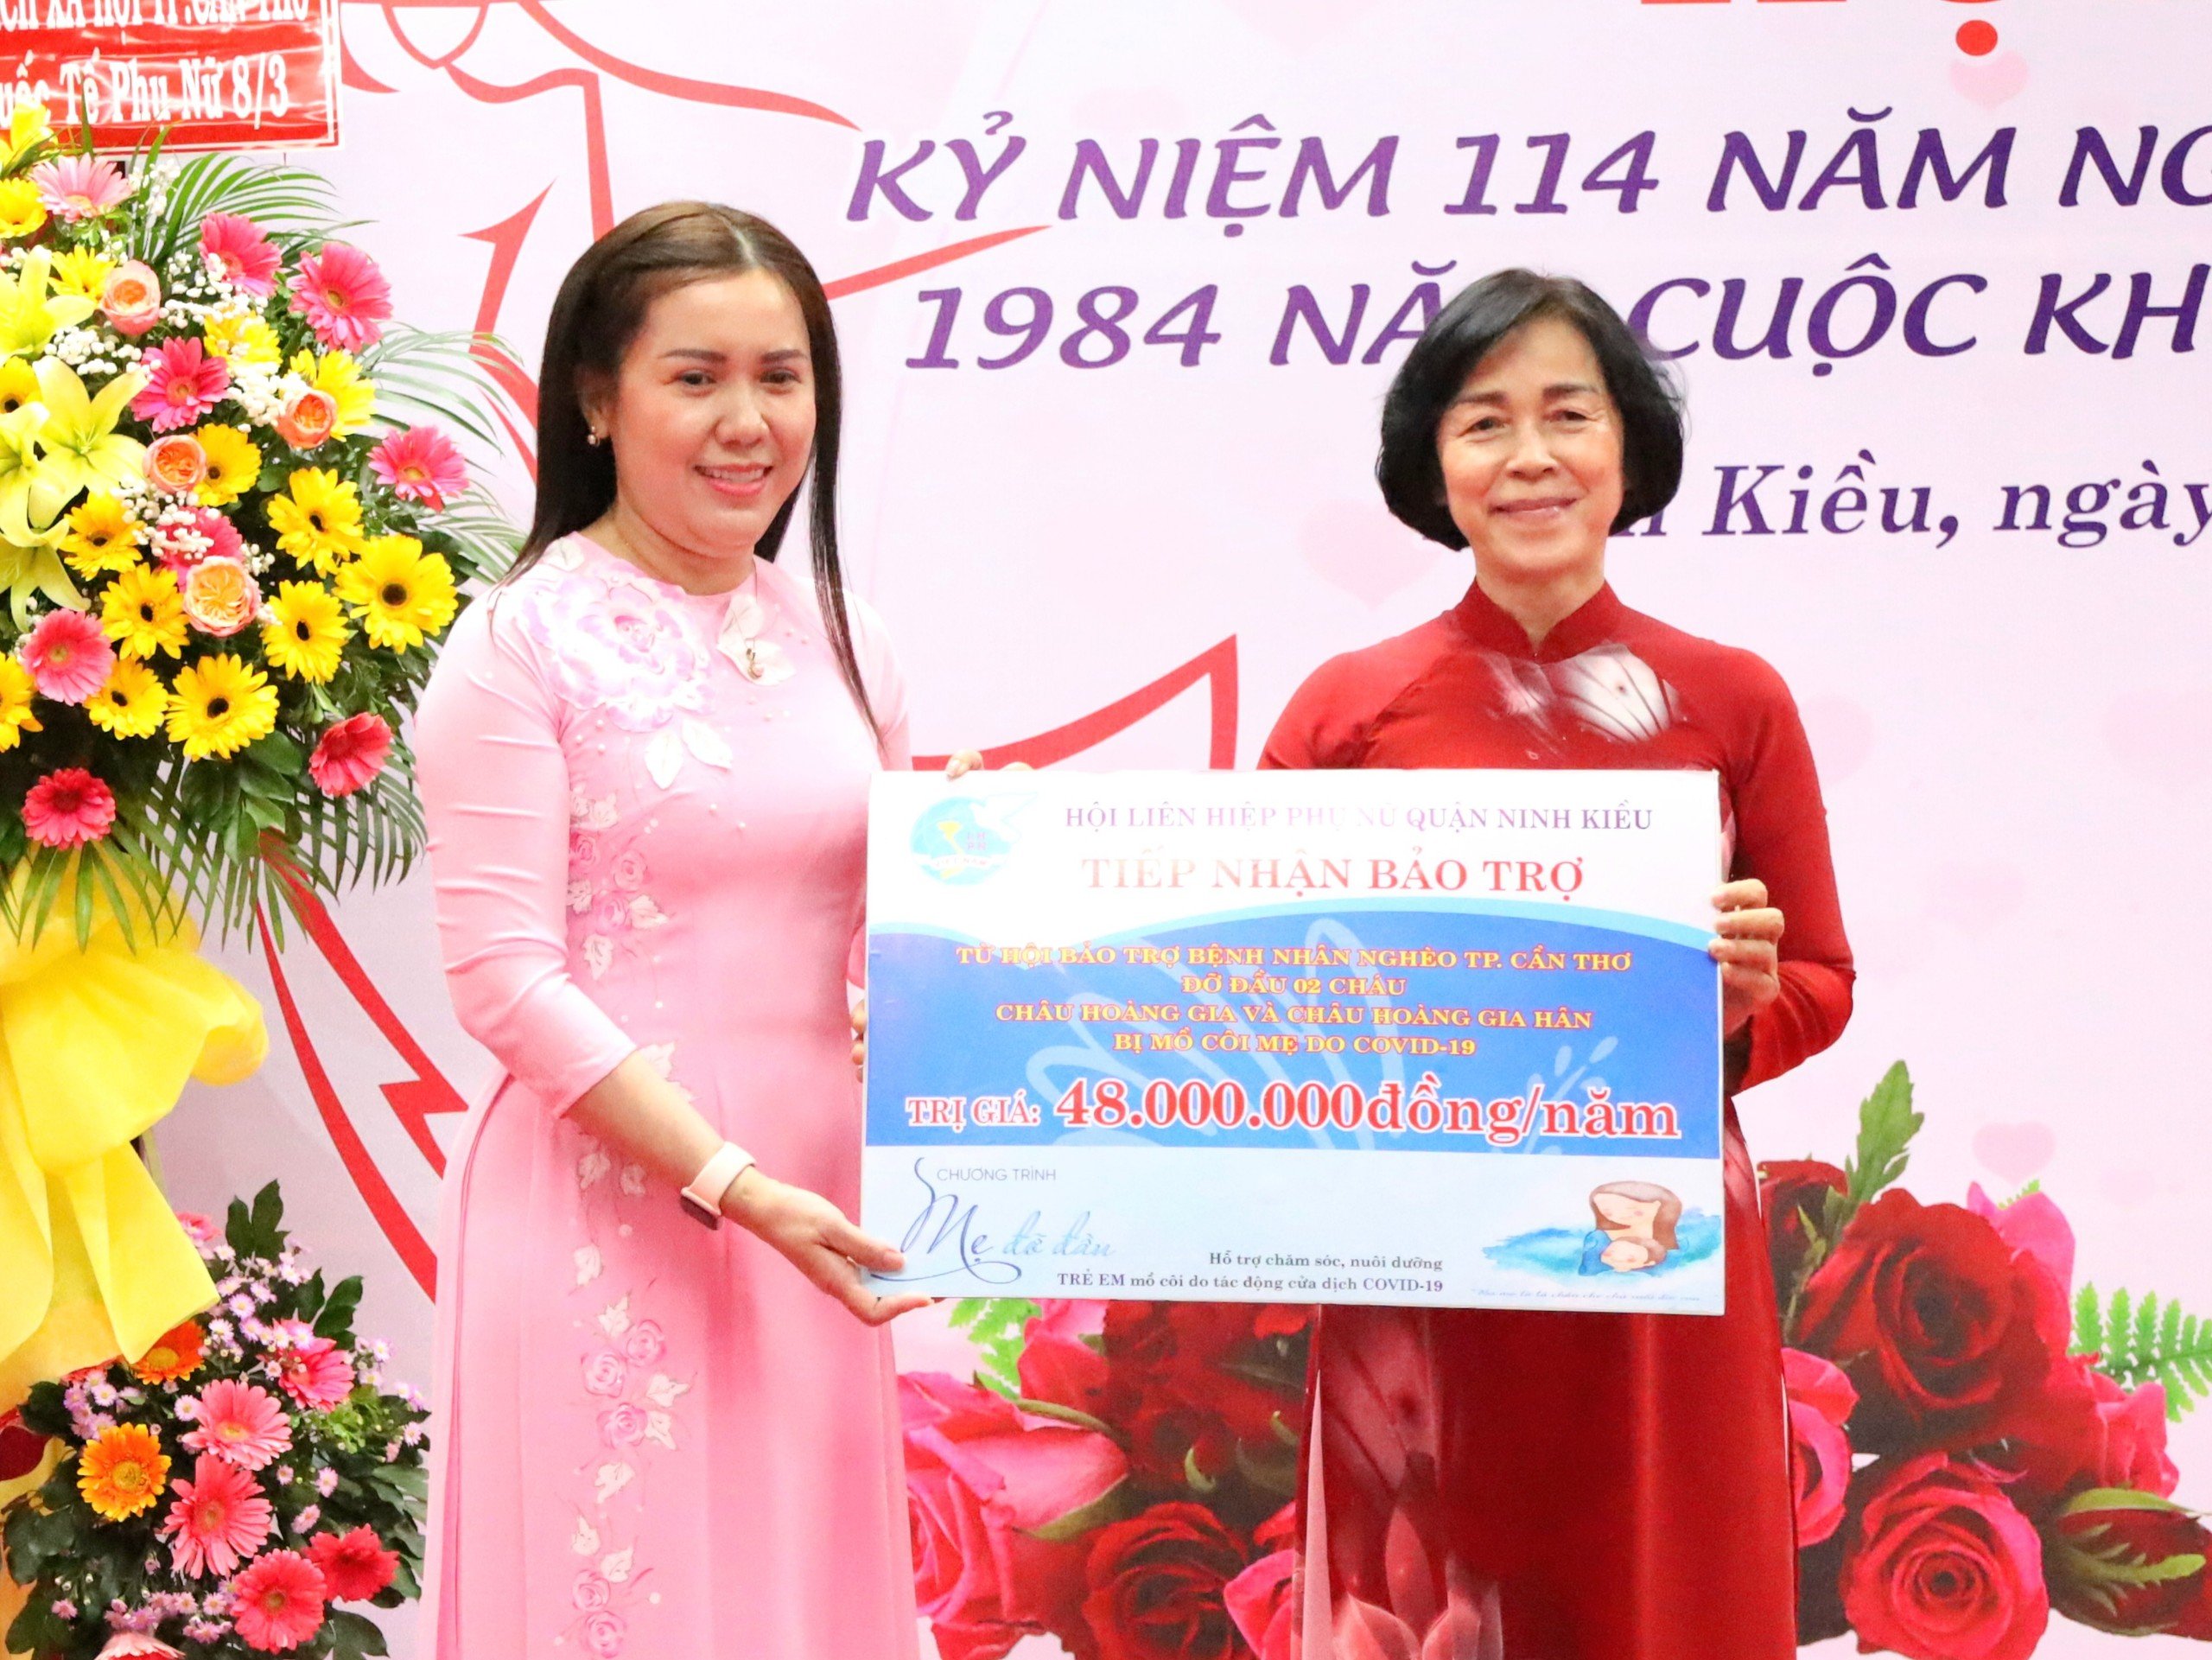 Hội LHPN quận Ninh Kiều tiếp nhận chi phí hỗ trợ 1 năm từ Hội Bảo trợ bệnh nhân nghèo TP. Cần Thơ để chăm lo cho 02 trẻ em mồ côi mẹ do COVID-19 phường Cái Khế, quận Ninh Kiều.